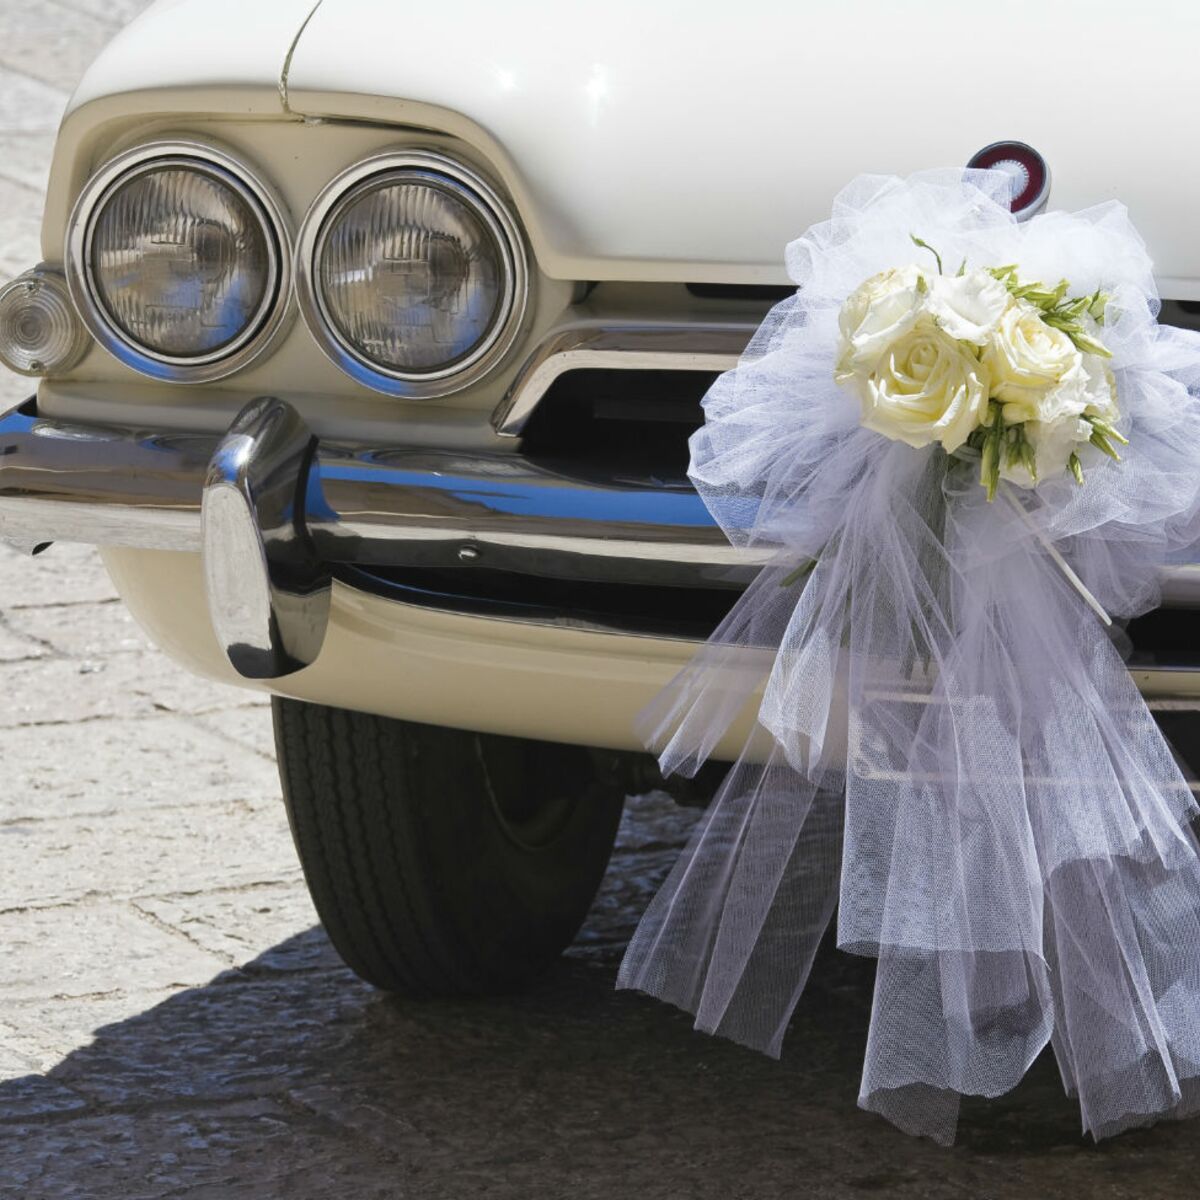 La décoration de voiture de mariage - c'est faisable!  Voiture mariage, Décoration  voiture mariage, Voiture de mariés